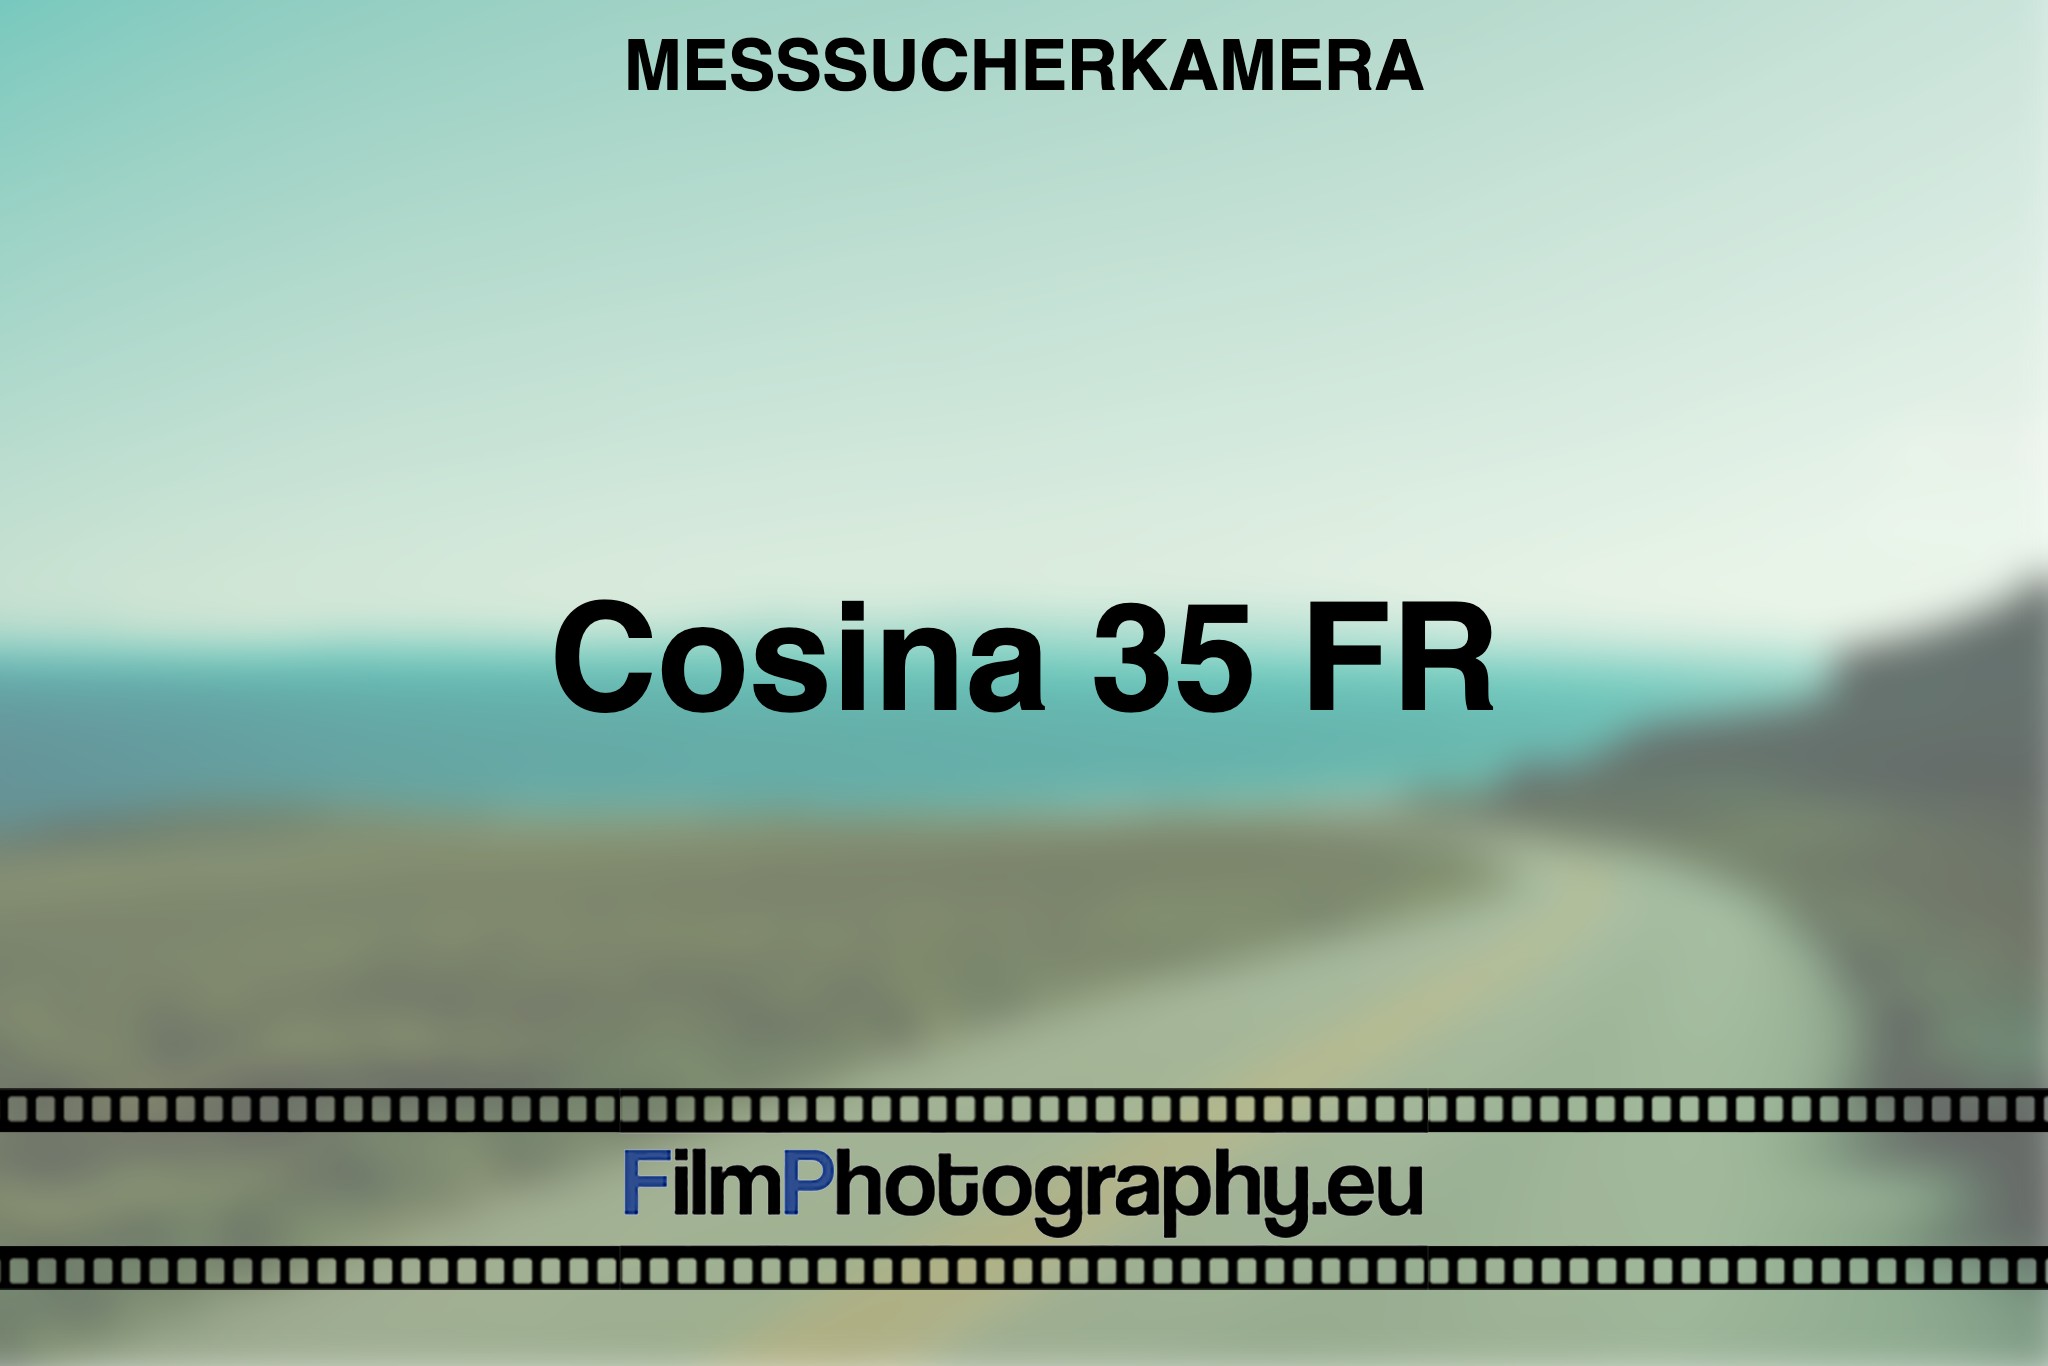 cosina-35-fr-messsucherkamera-bnv